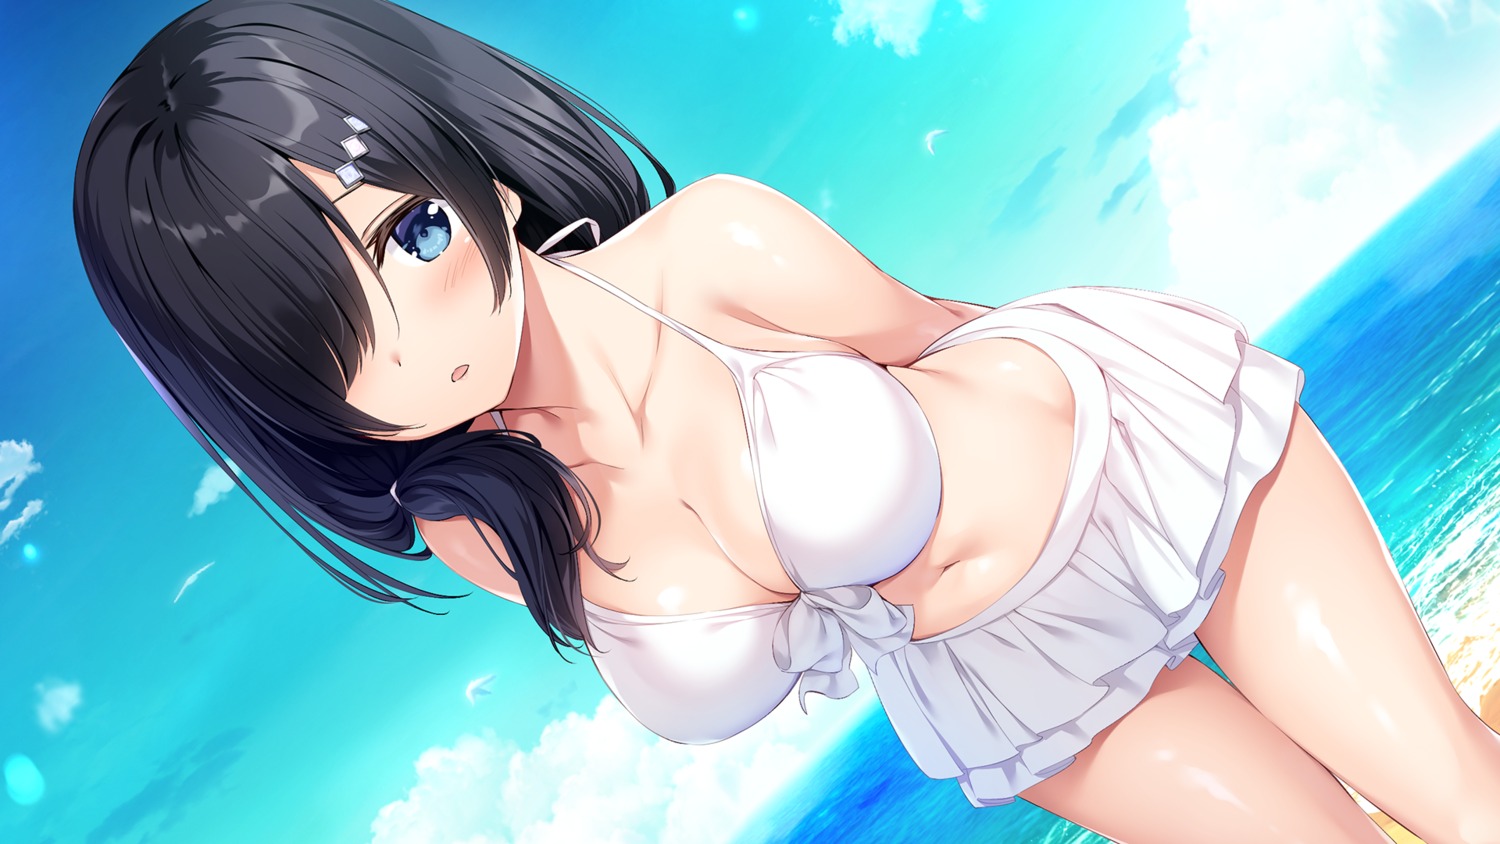 aibeya_2 azarashi_soft bikini cleavage game_cg misora_saku oryou swimsuits